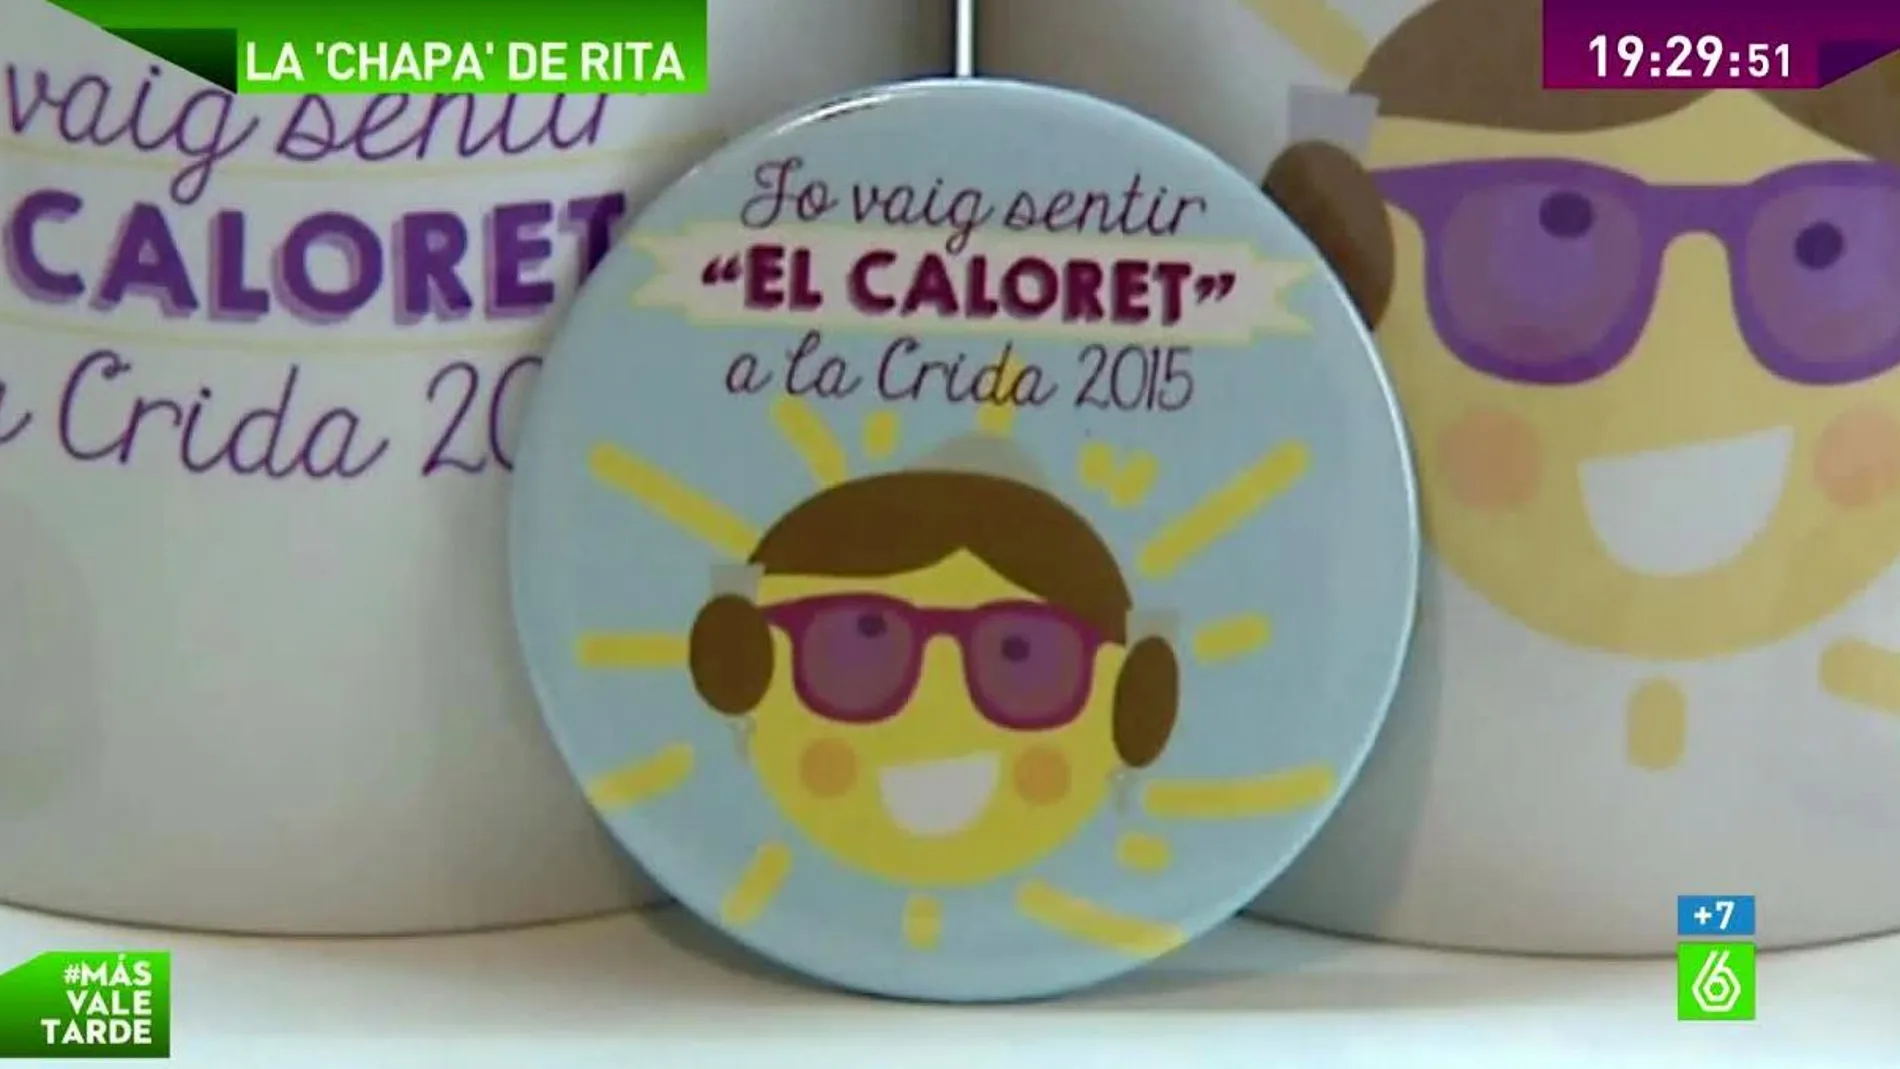 "I love Caloret faller", el patinazo de Rita Barberá convertido en chapa